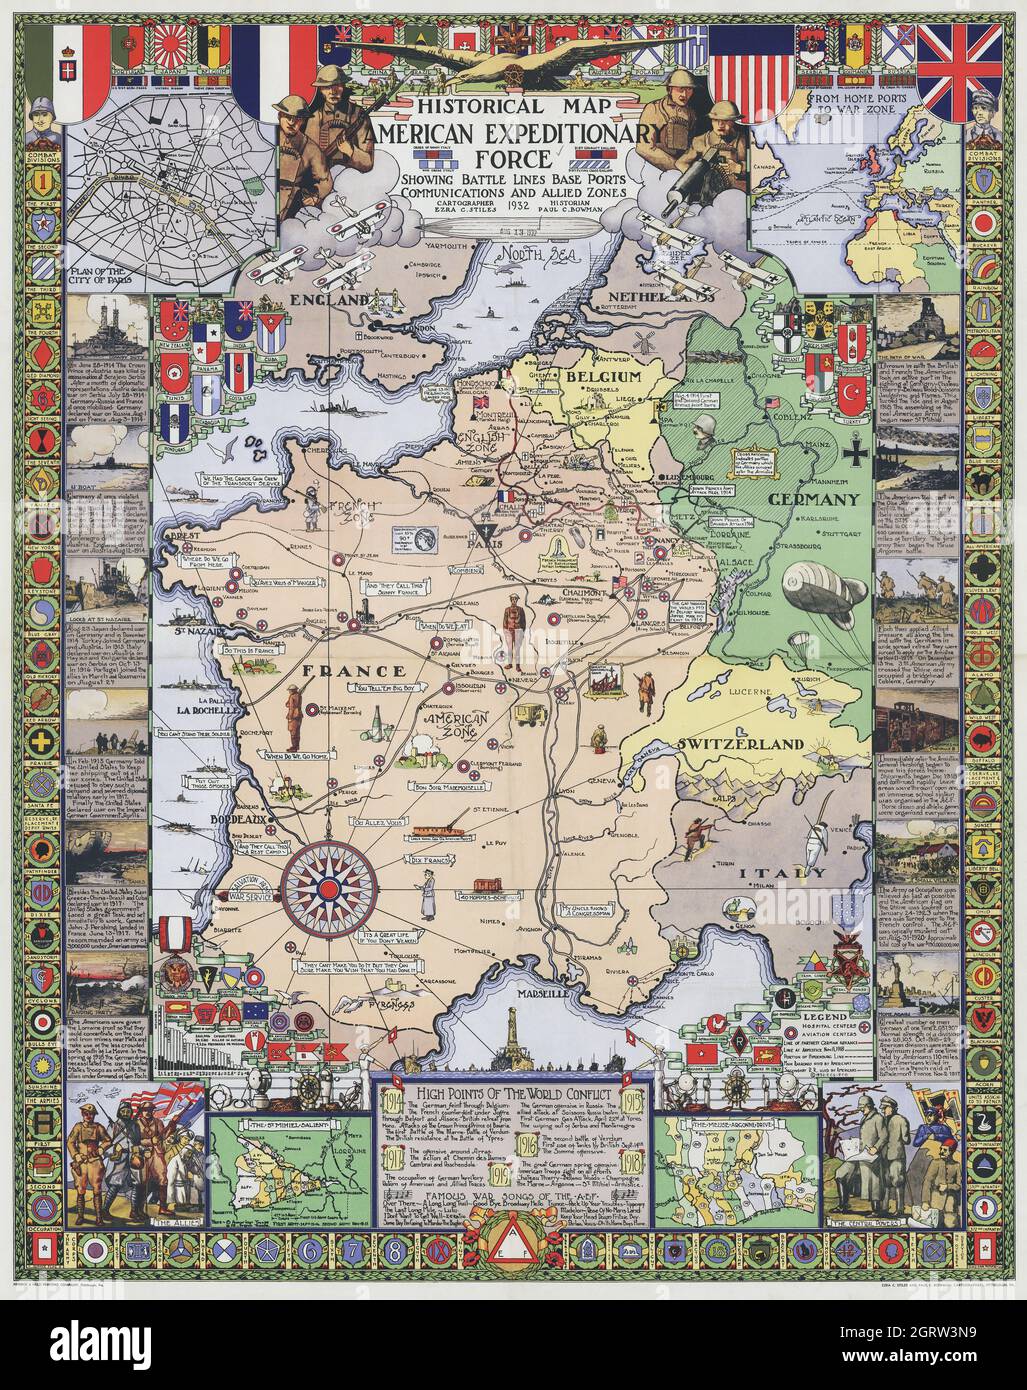 Historische Karte - American Expeditionary Force Europe - 1. Weltkrieg - Karte von Europa Stockfoto